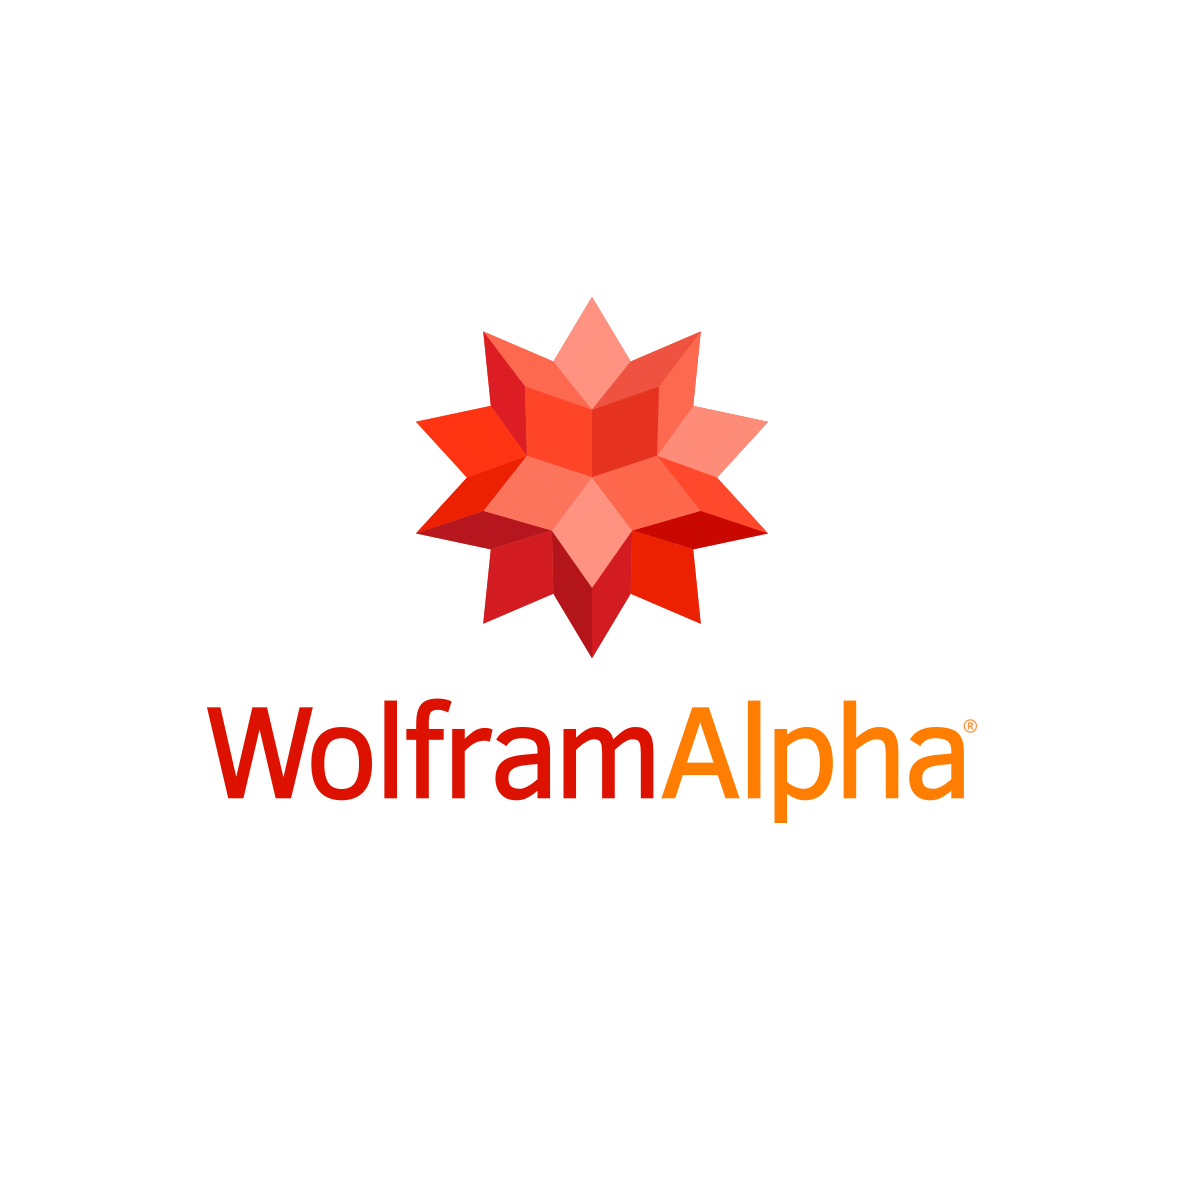 Vectors - Wolfram|Alpha Examples